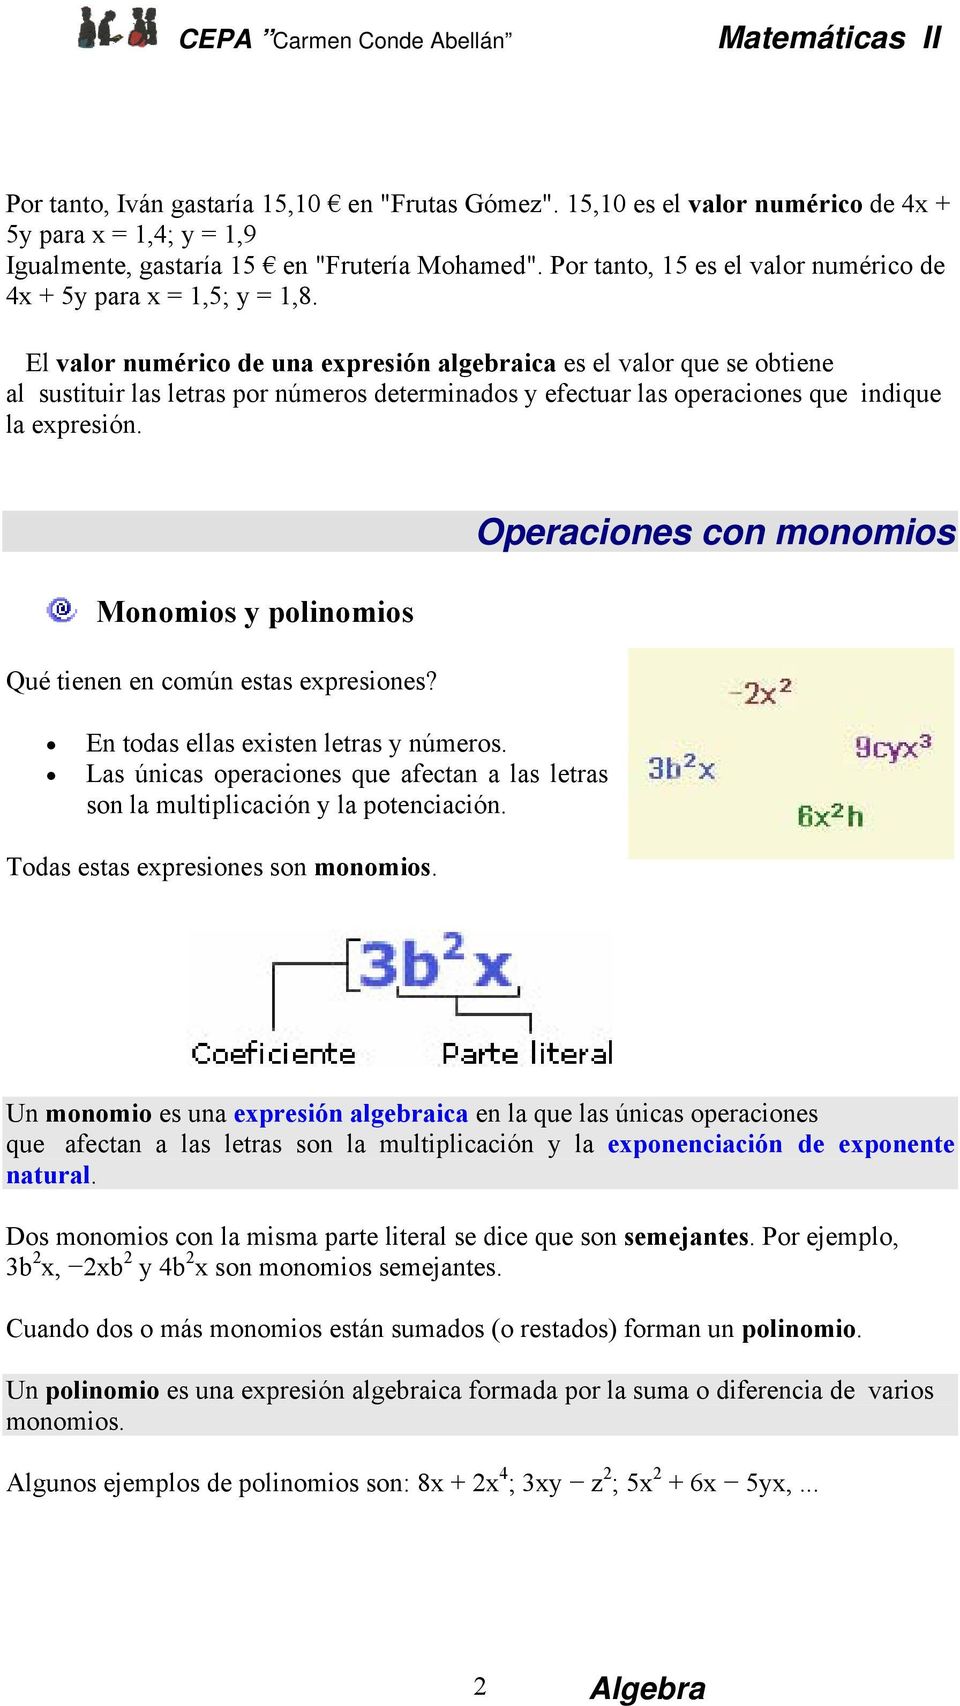 El valor numérico de una expresión algebraica es el valor que se obtiene al sustituir las letras por números determinados y efectuar las operaciones que indique la expresión.